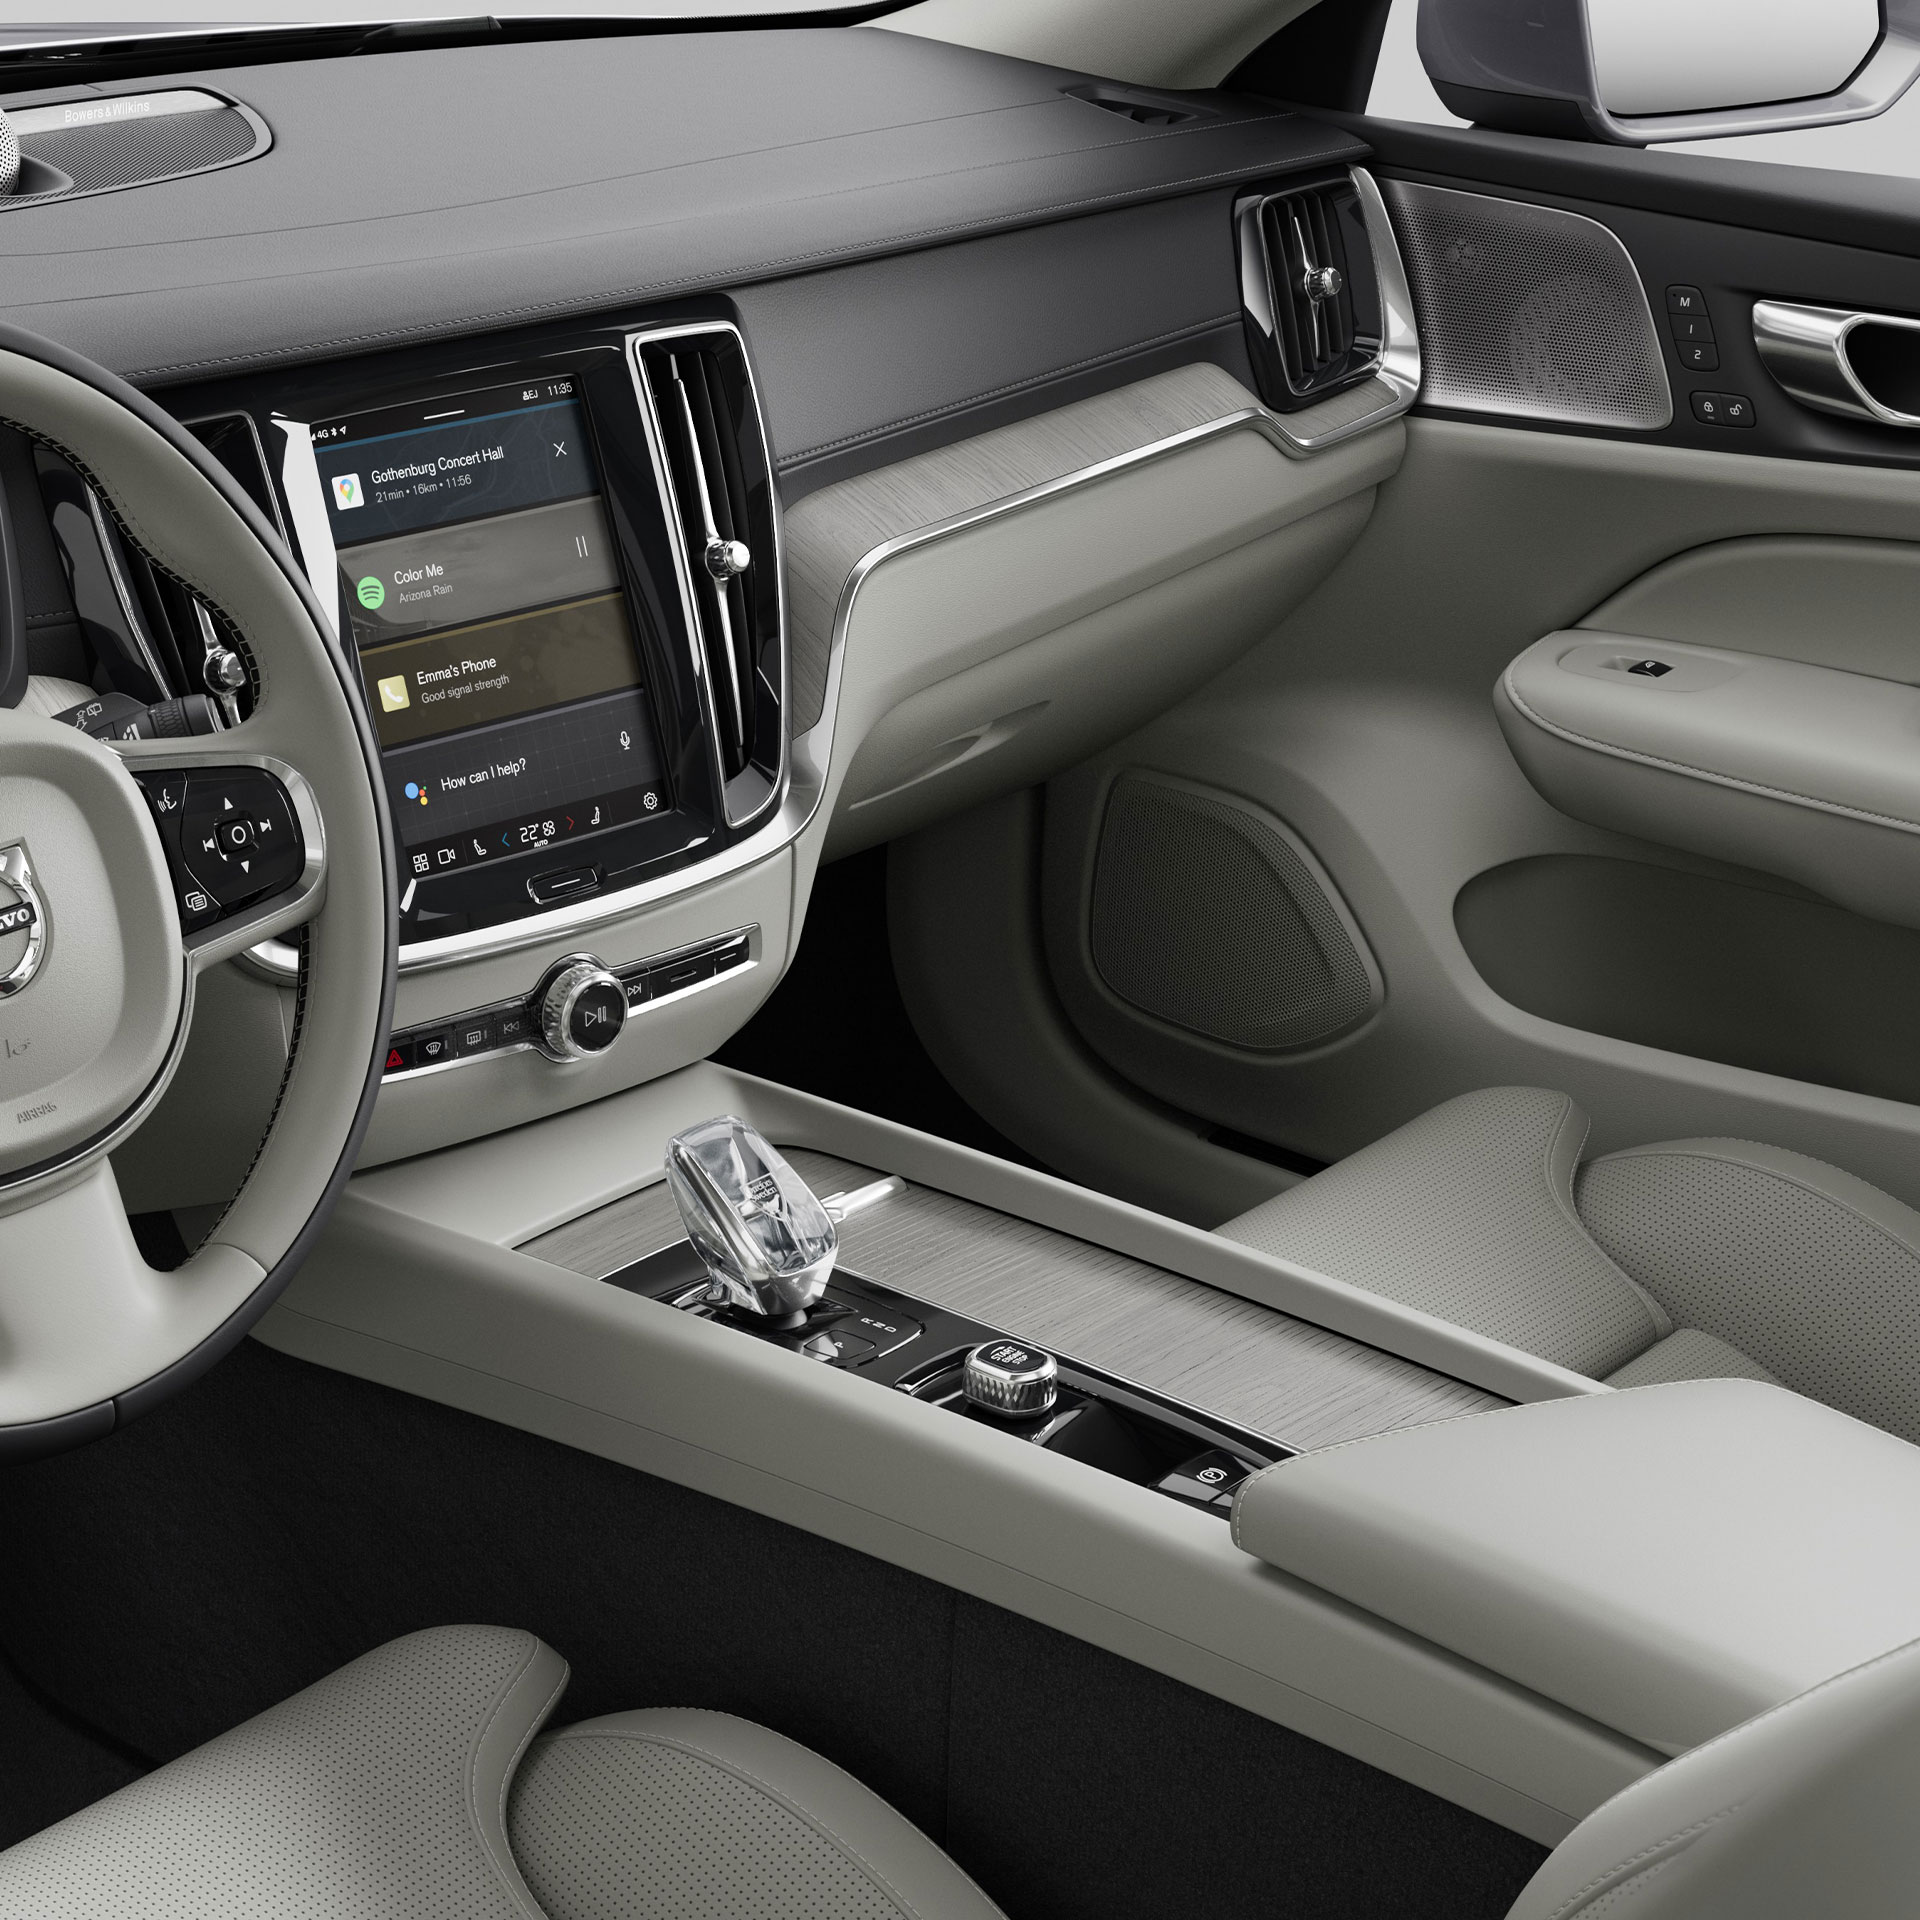 Vista desde la posición del copiloto del volante del semihíbrido Volvo V60, el panel de instrumentos, los conductos de aire y la pantalla táctil de información y entretenimiento.